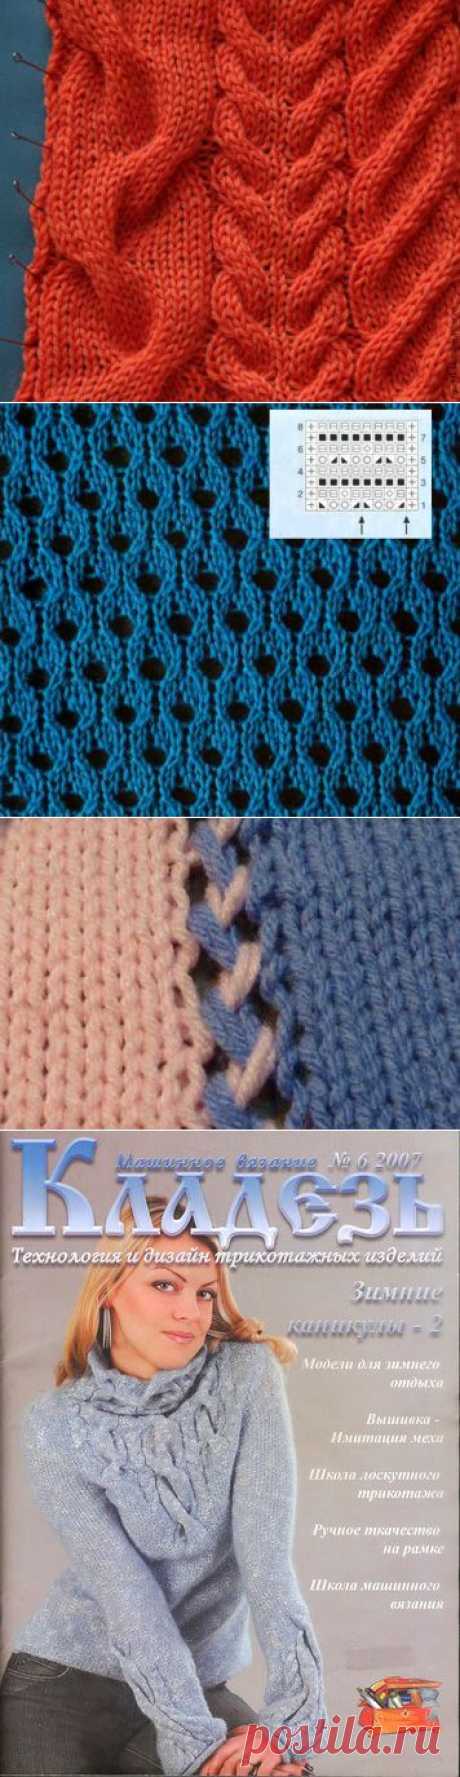 Машинное вязание | Записи в рубрике Машинное вязание | Дневник hemka70